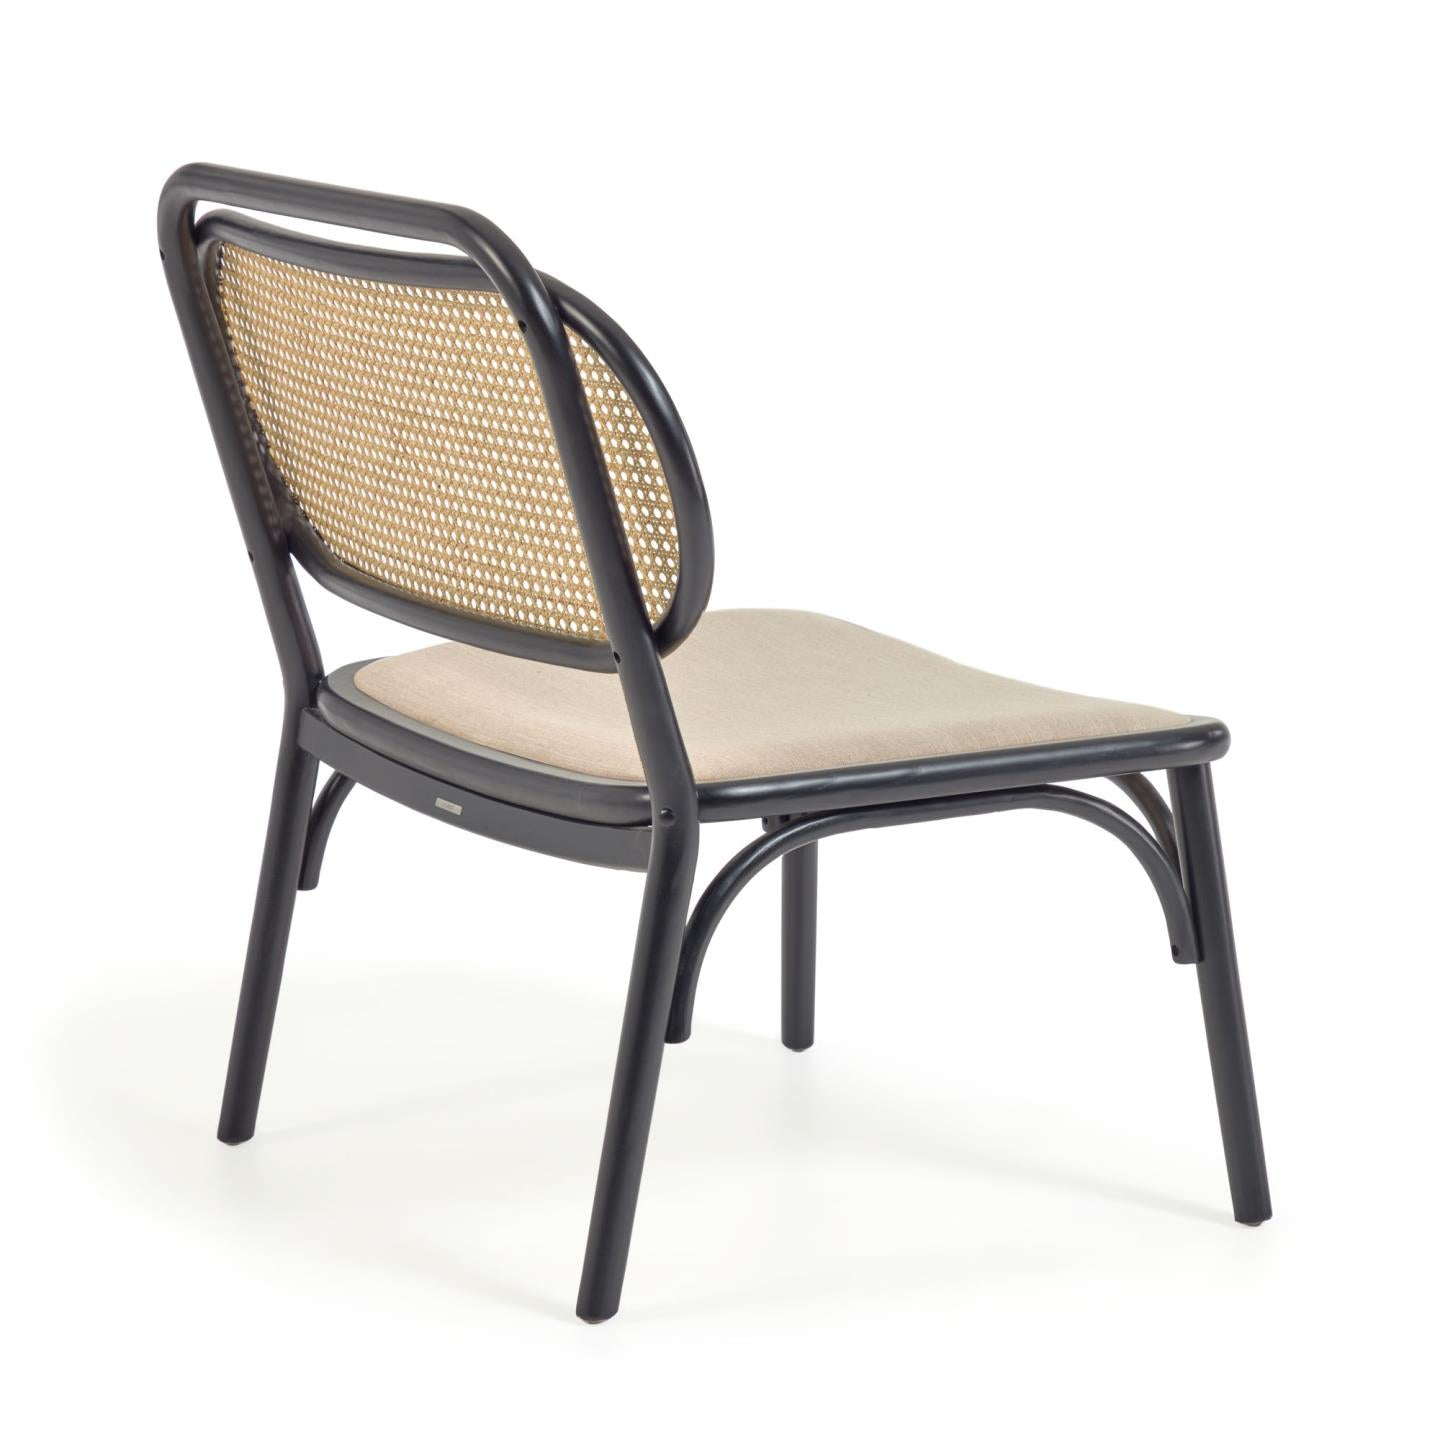 Doriane tömör szilfa fotel fekete lakkozott felülettel és kárpitozott üléssel